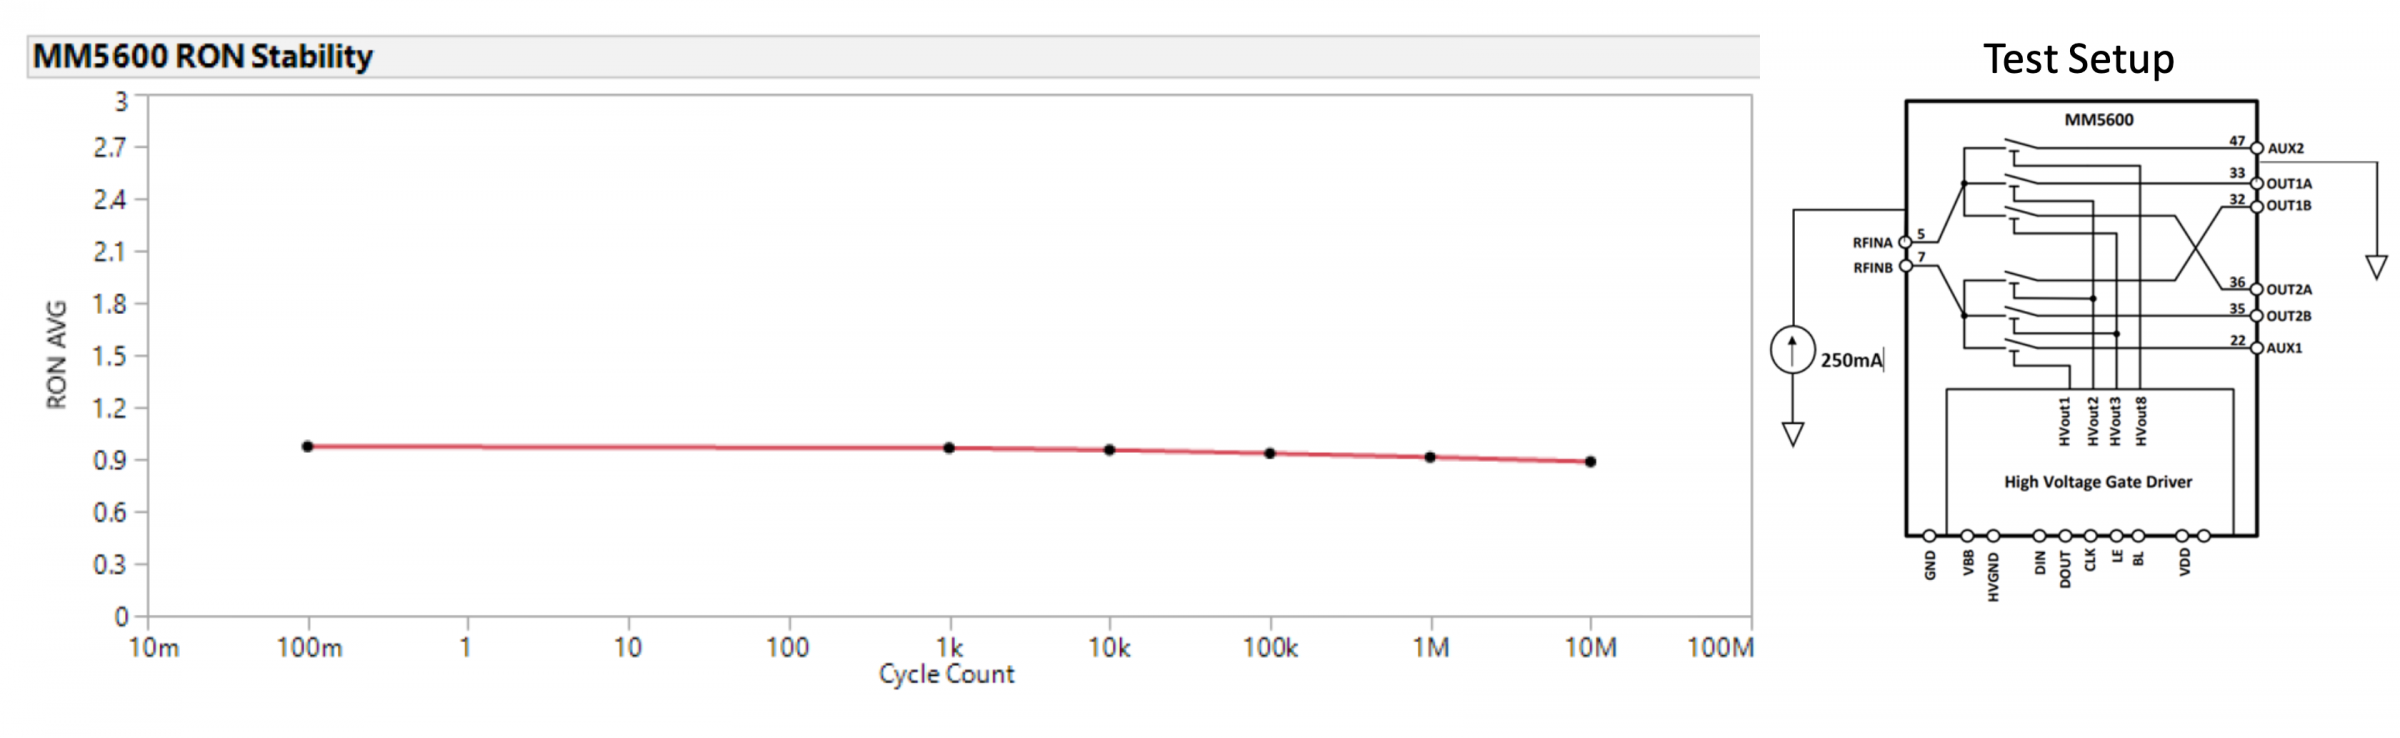 Resistencia de contacto de MM5600 durante más de 10 millones de ciclos operativos a 85°C